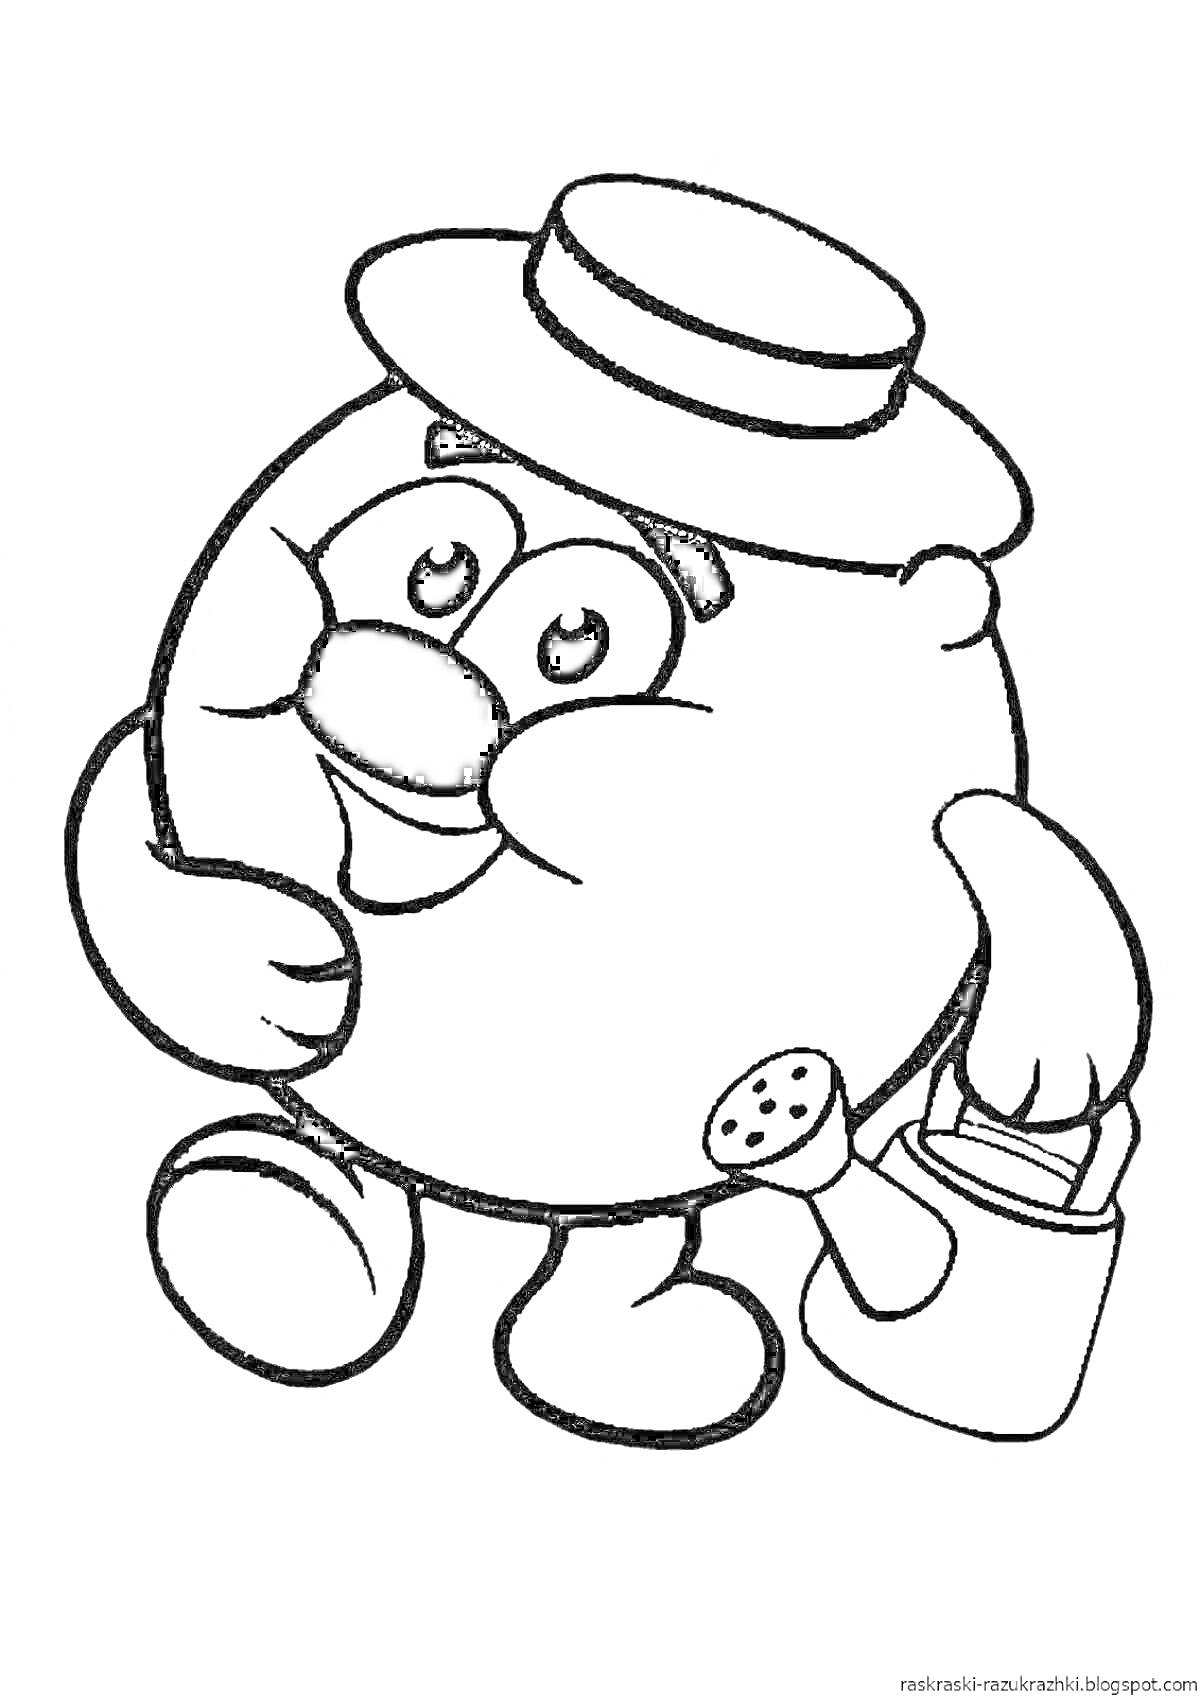 Раскраска Круглый персонаж в шляпе с лейкой и ведерком